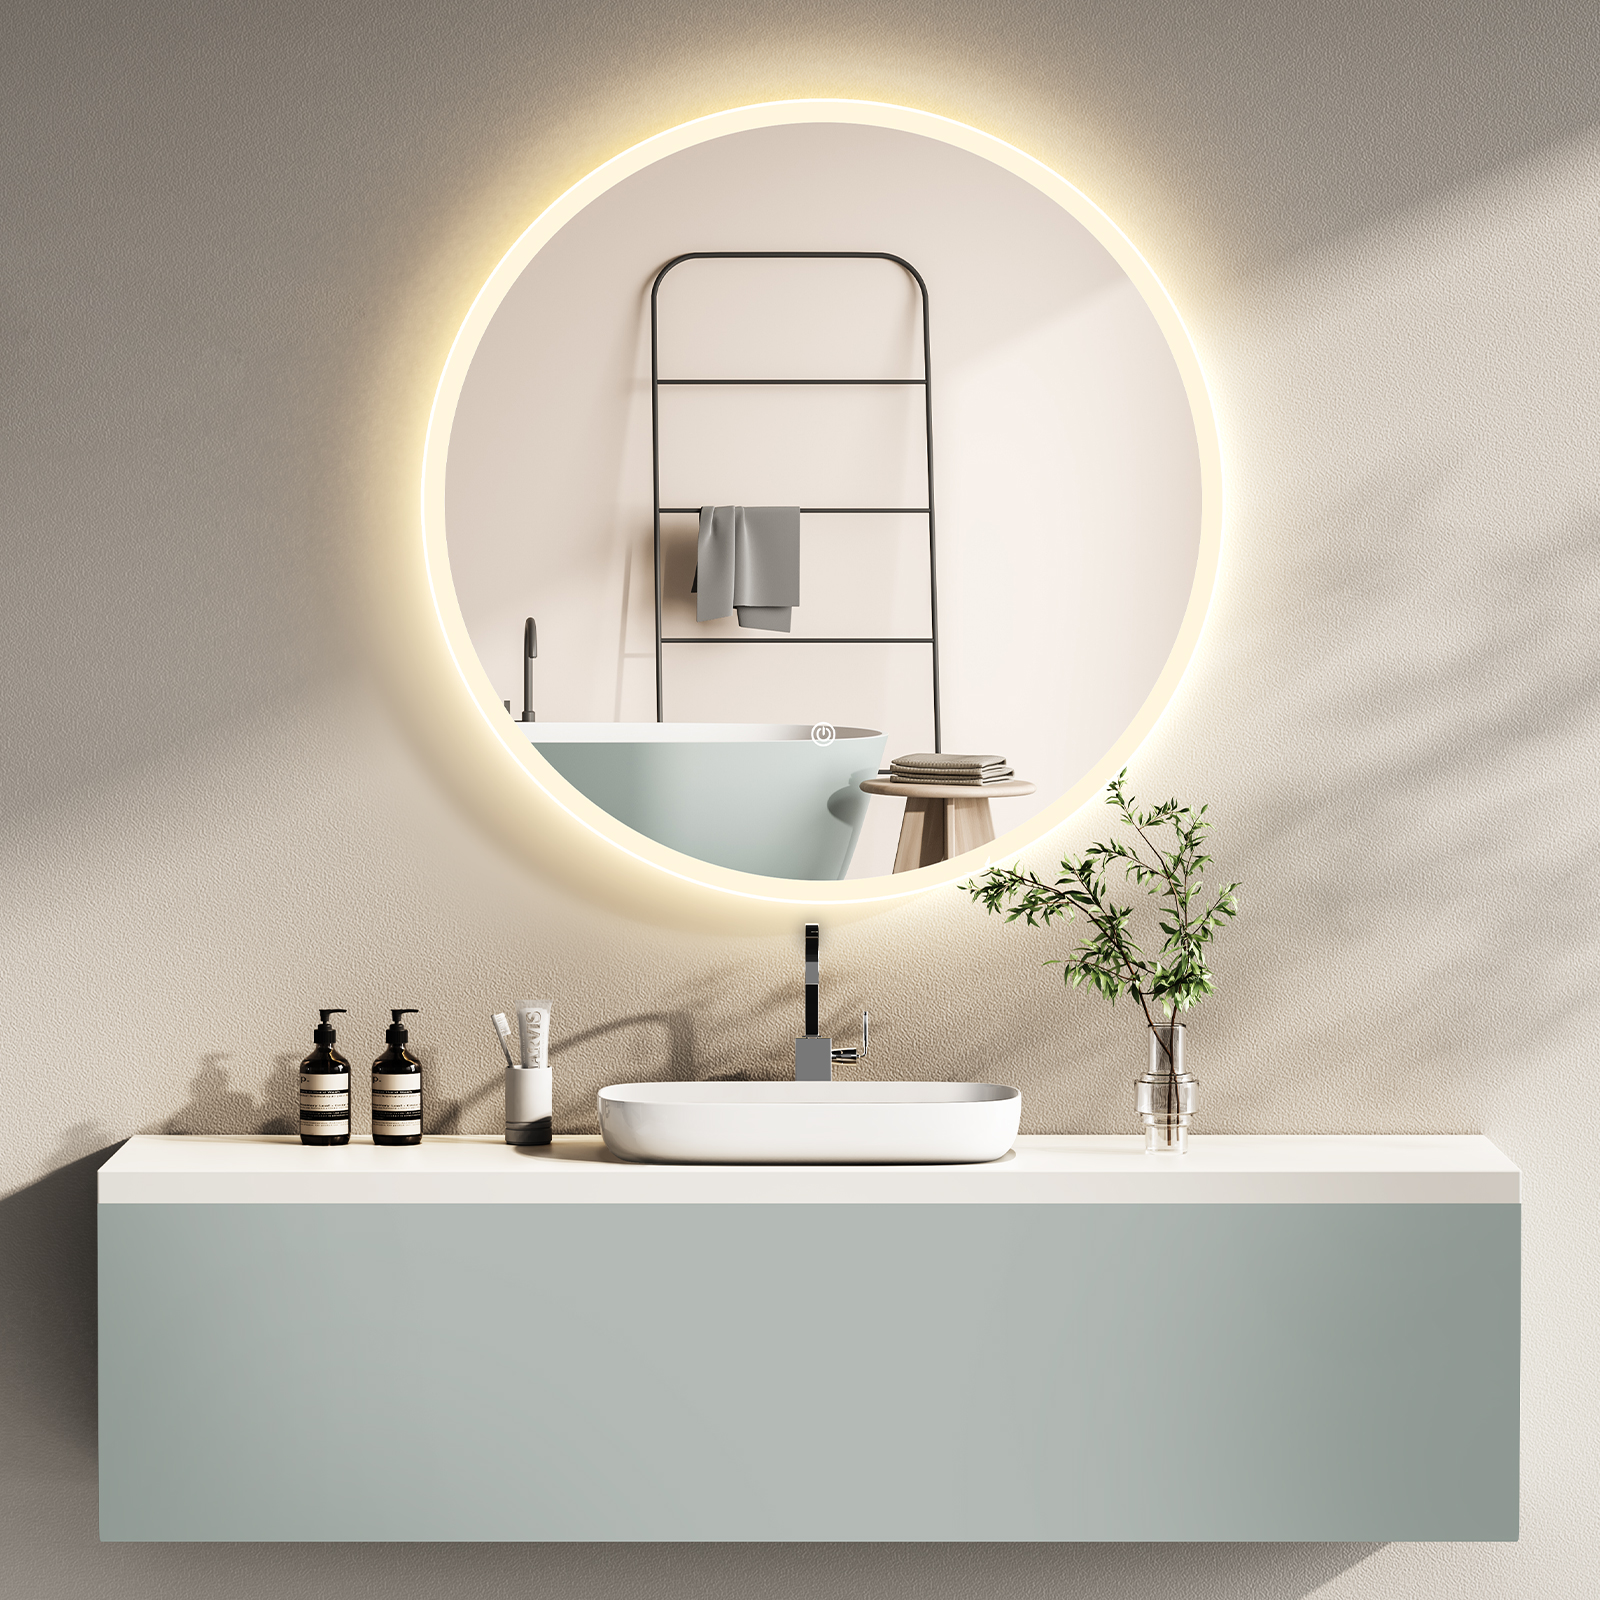 HOKO HOKO LED Spiegel 80cm+3 Lichtfarbe Kaltweiß Lichtfarben Badspiegel